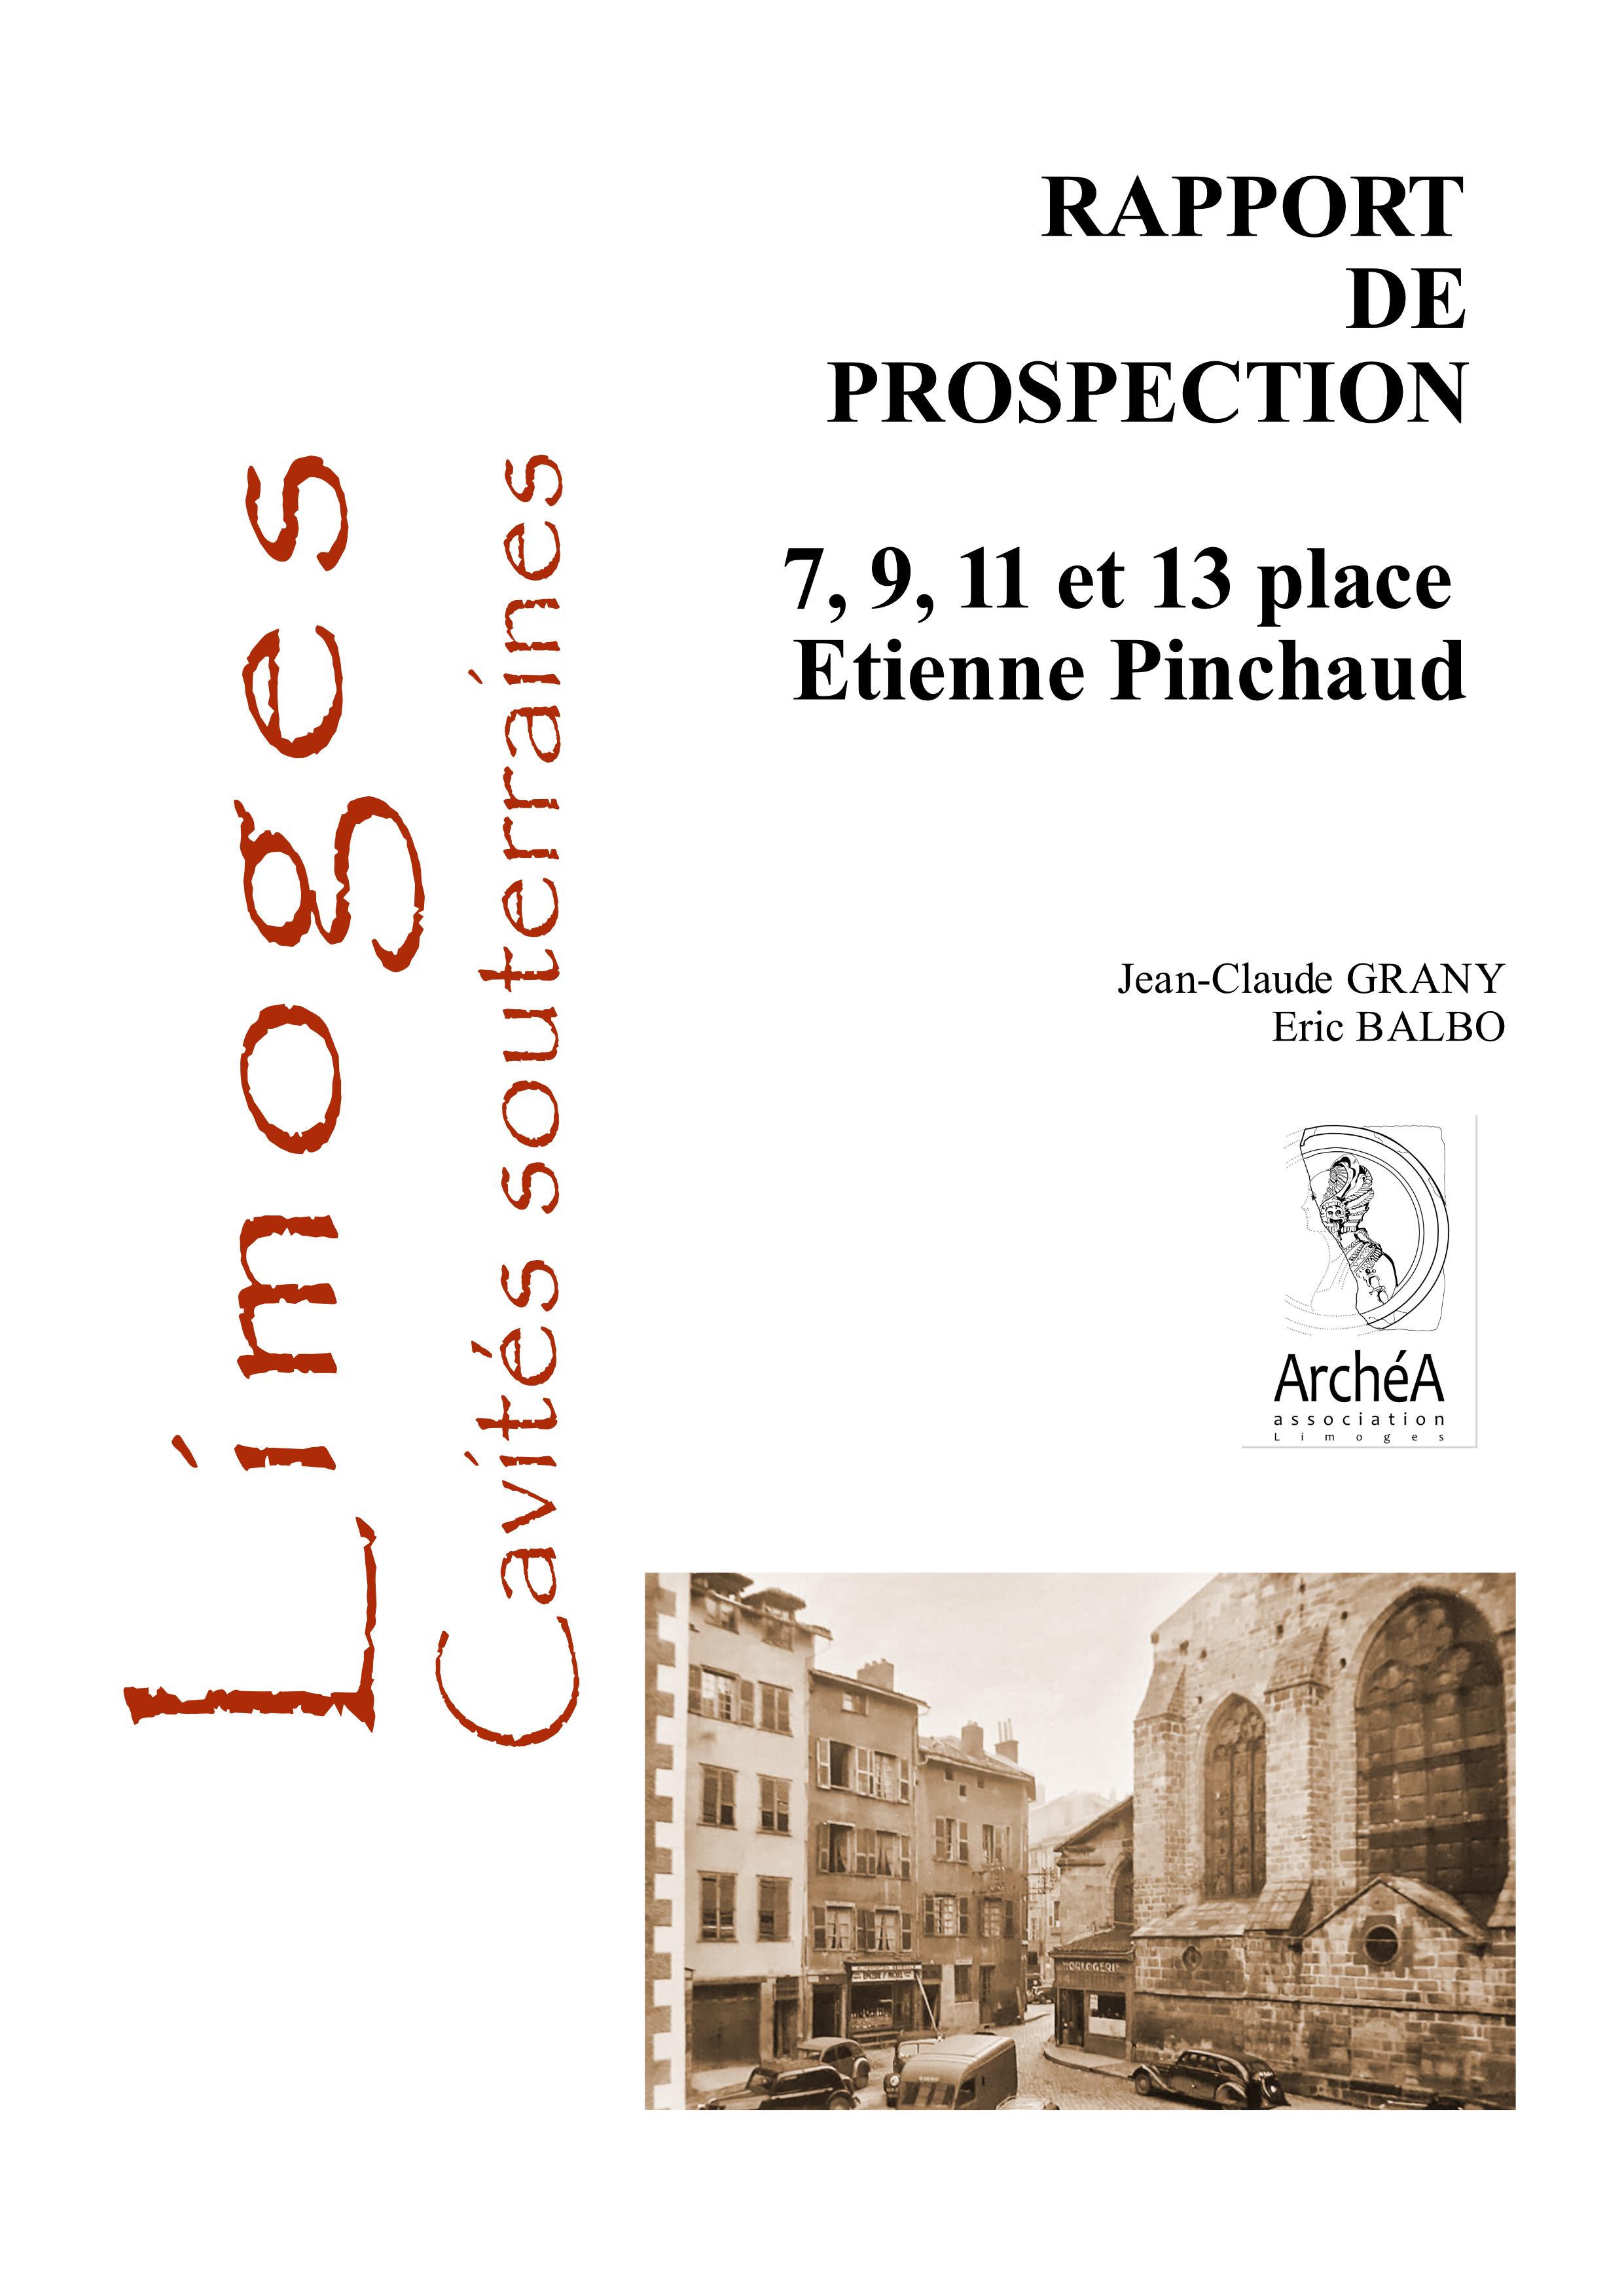 Prospection inventaire  - Cavités souterraines de Limoges - Place Etienne Pinchaud